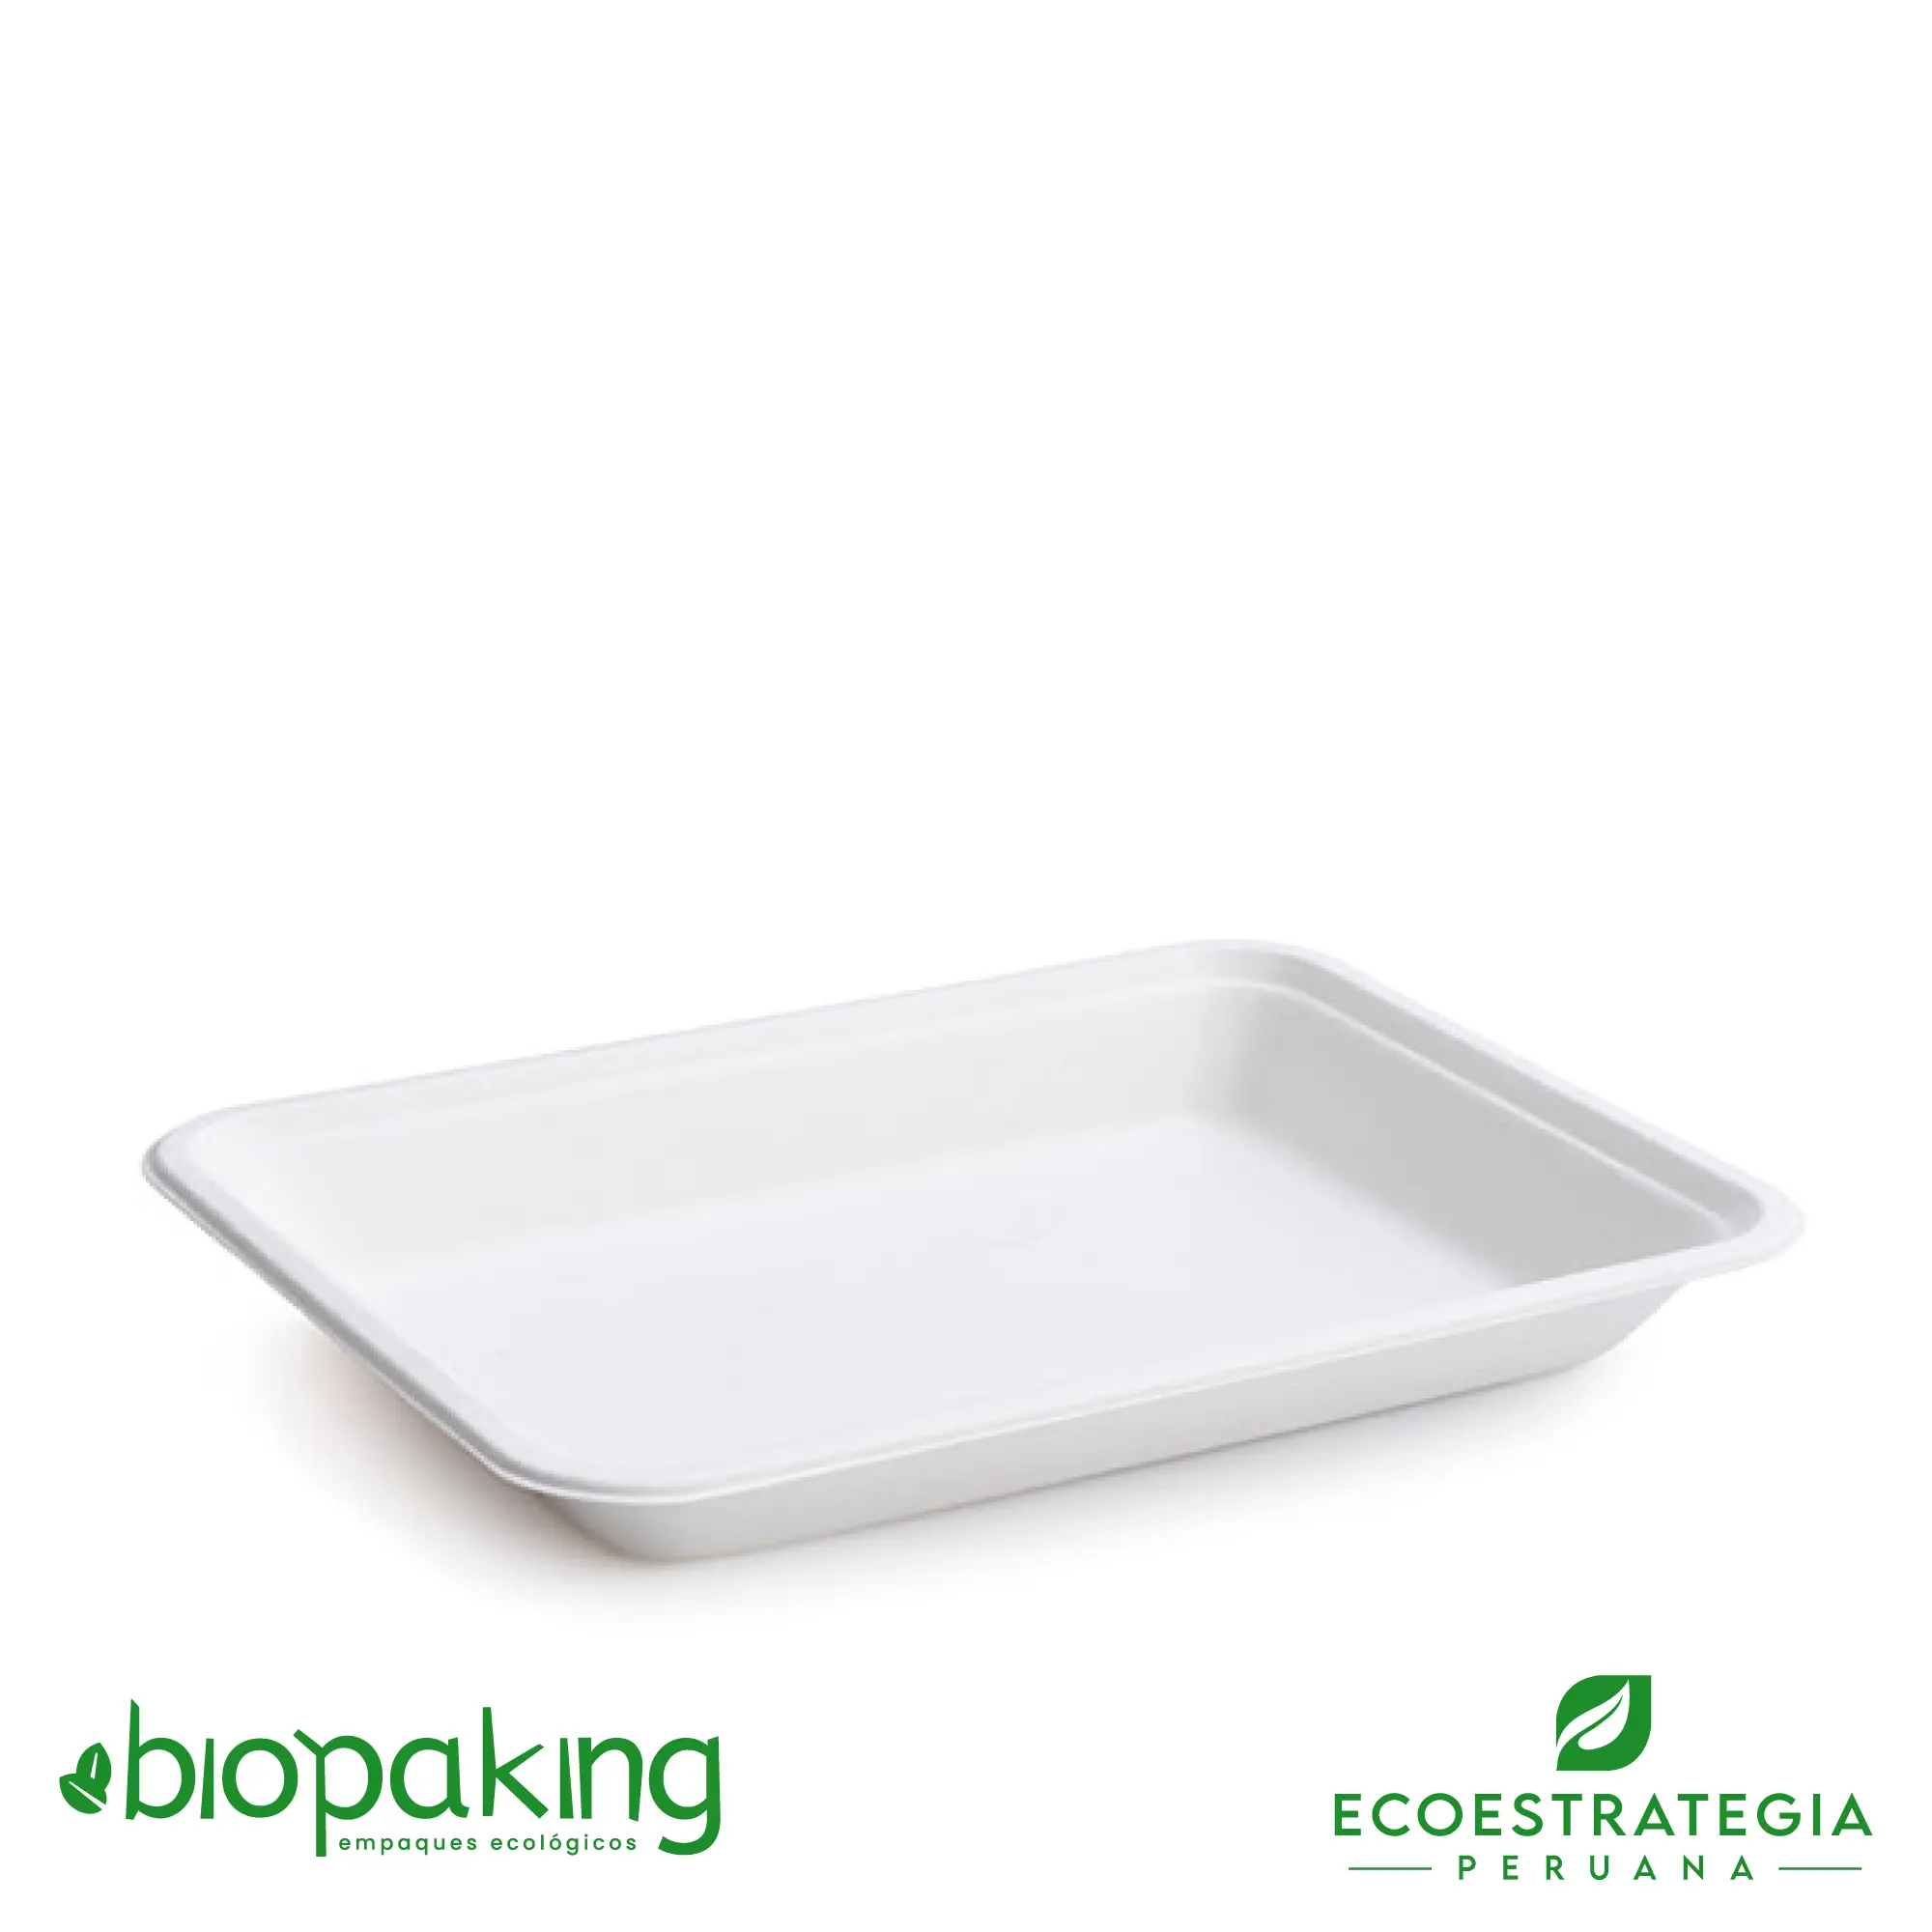 La bandeja biodegradable pb2 tiene un peso de 12gr. Envases descartables hechos a base de fibra de caña. Cotiza tus platos, tapers y empaques biodegradables